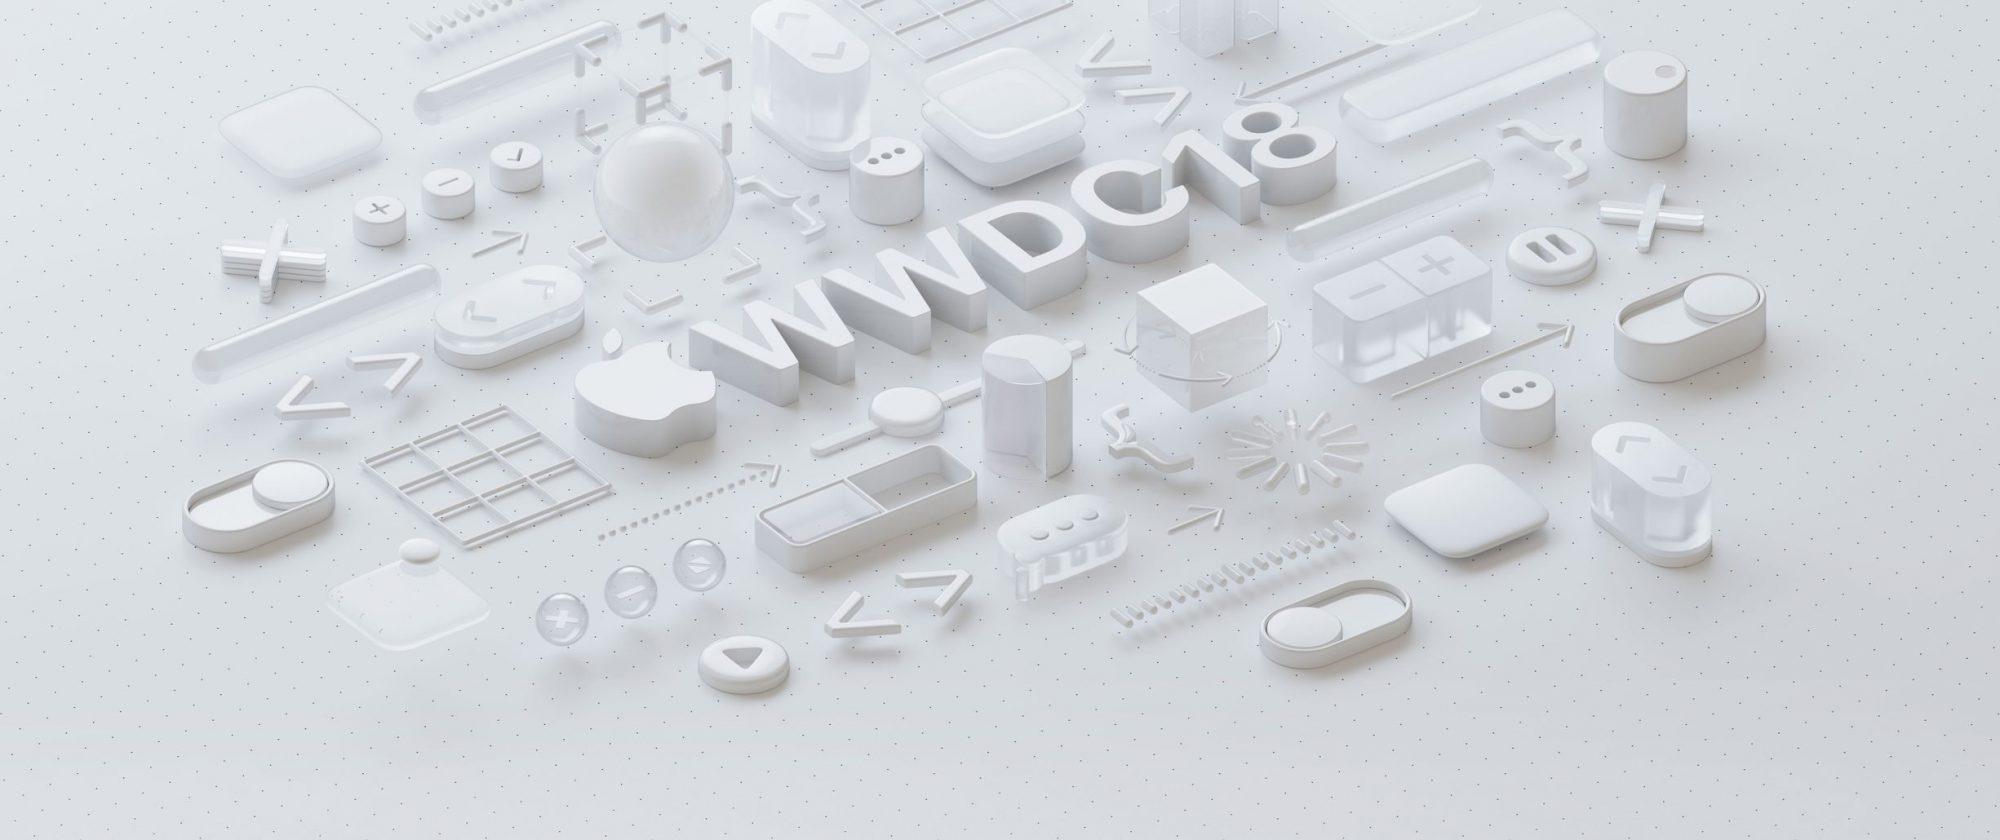 خلاصه کنفرانس WWDC 2018 اپل - در کنفرانس توسعه دهندگان اپل چه گذشت؟